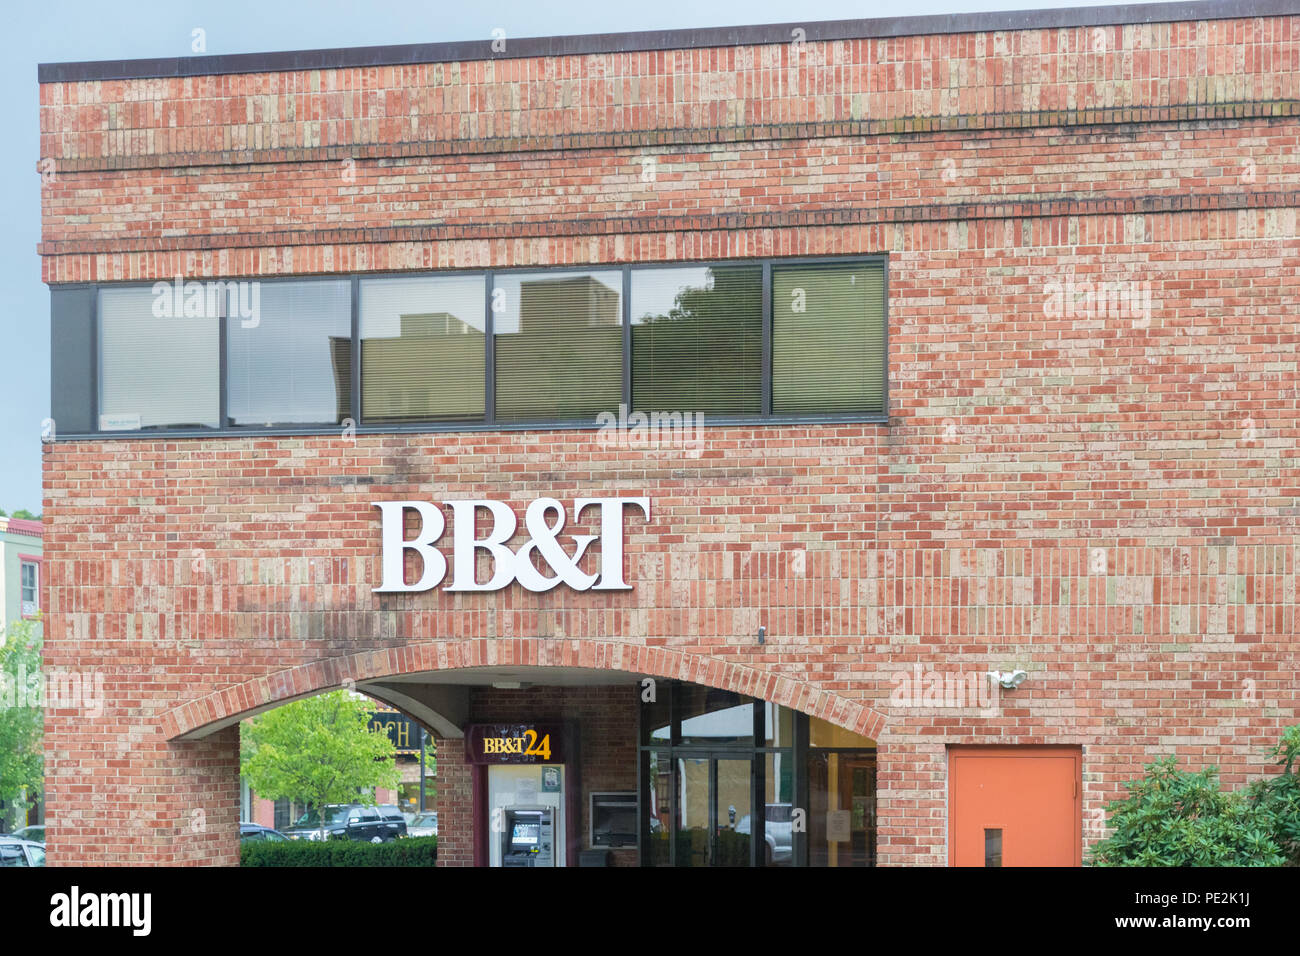 EASTON, PA - 11 août 2018 : BB&T sign on bank building avec ATM . BB&T Bank ATM avec façade à travers des signes bancaires Banque D'Images